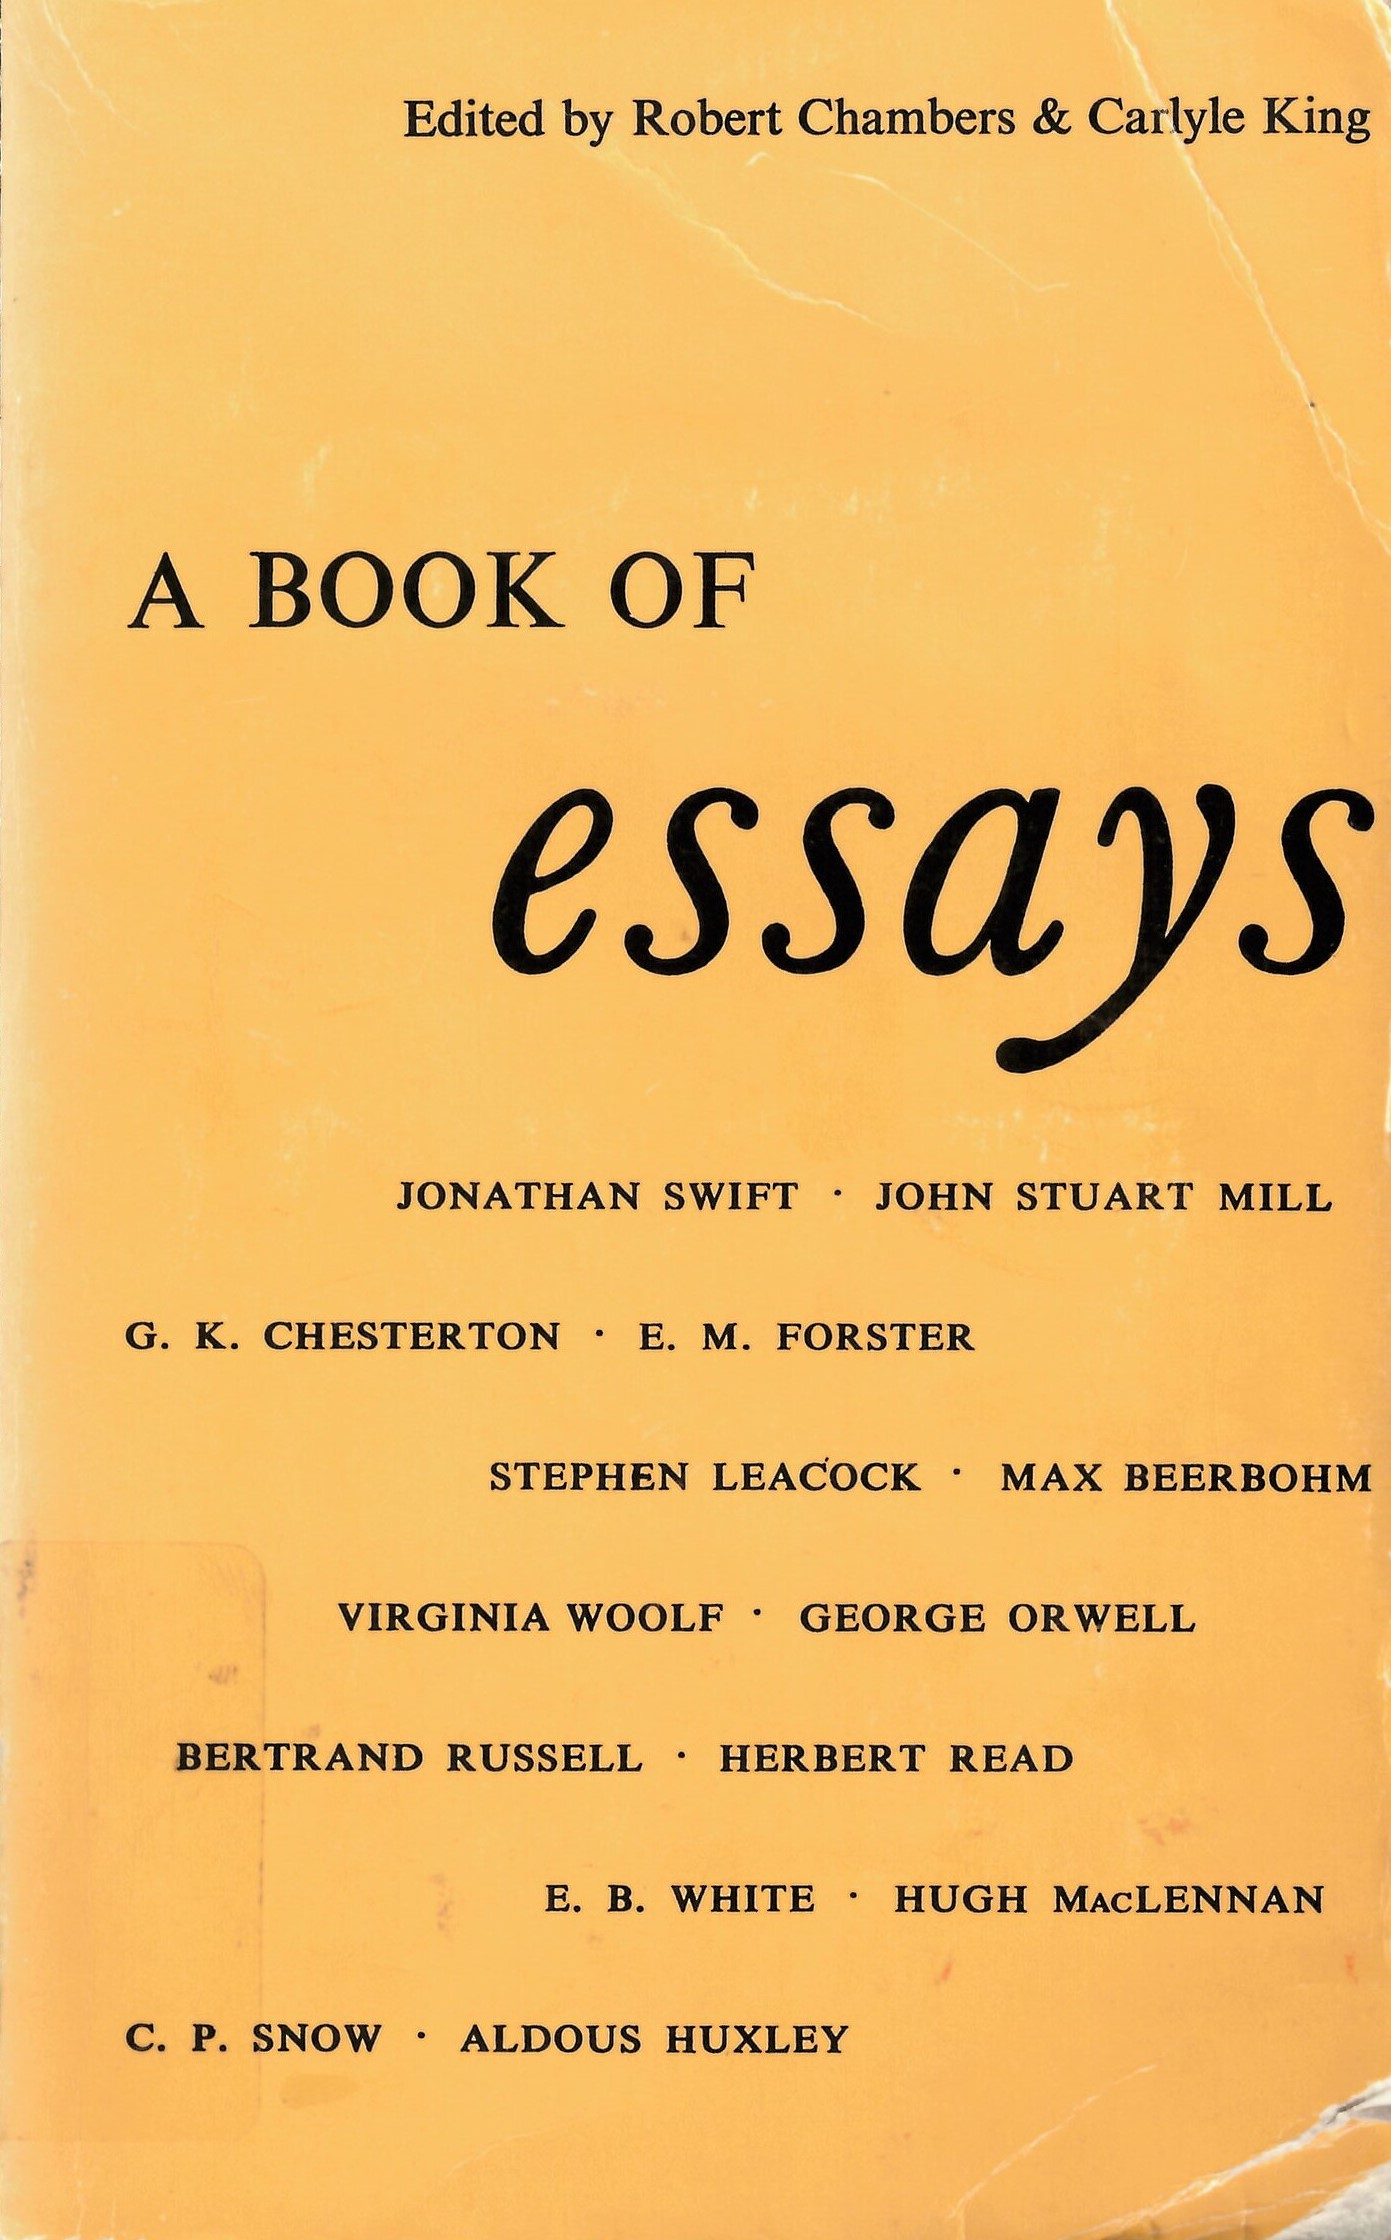 Book of essays